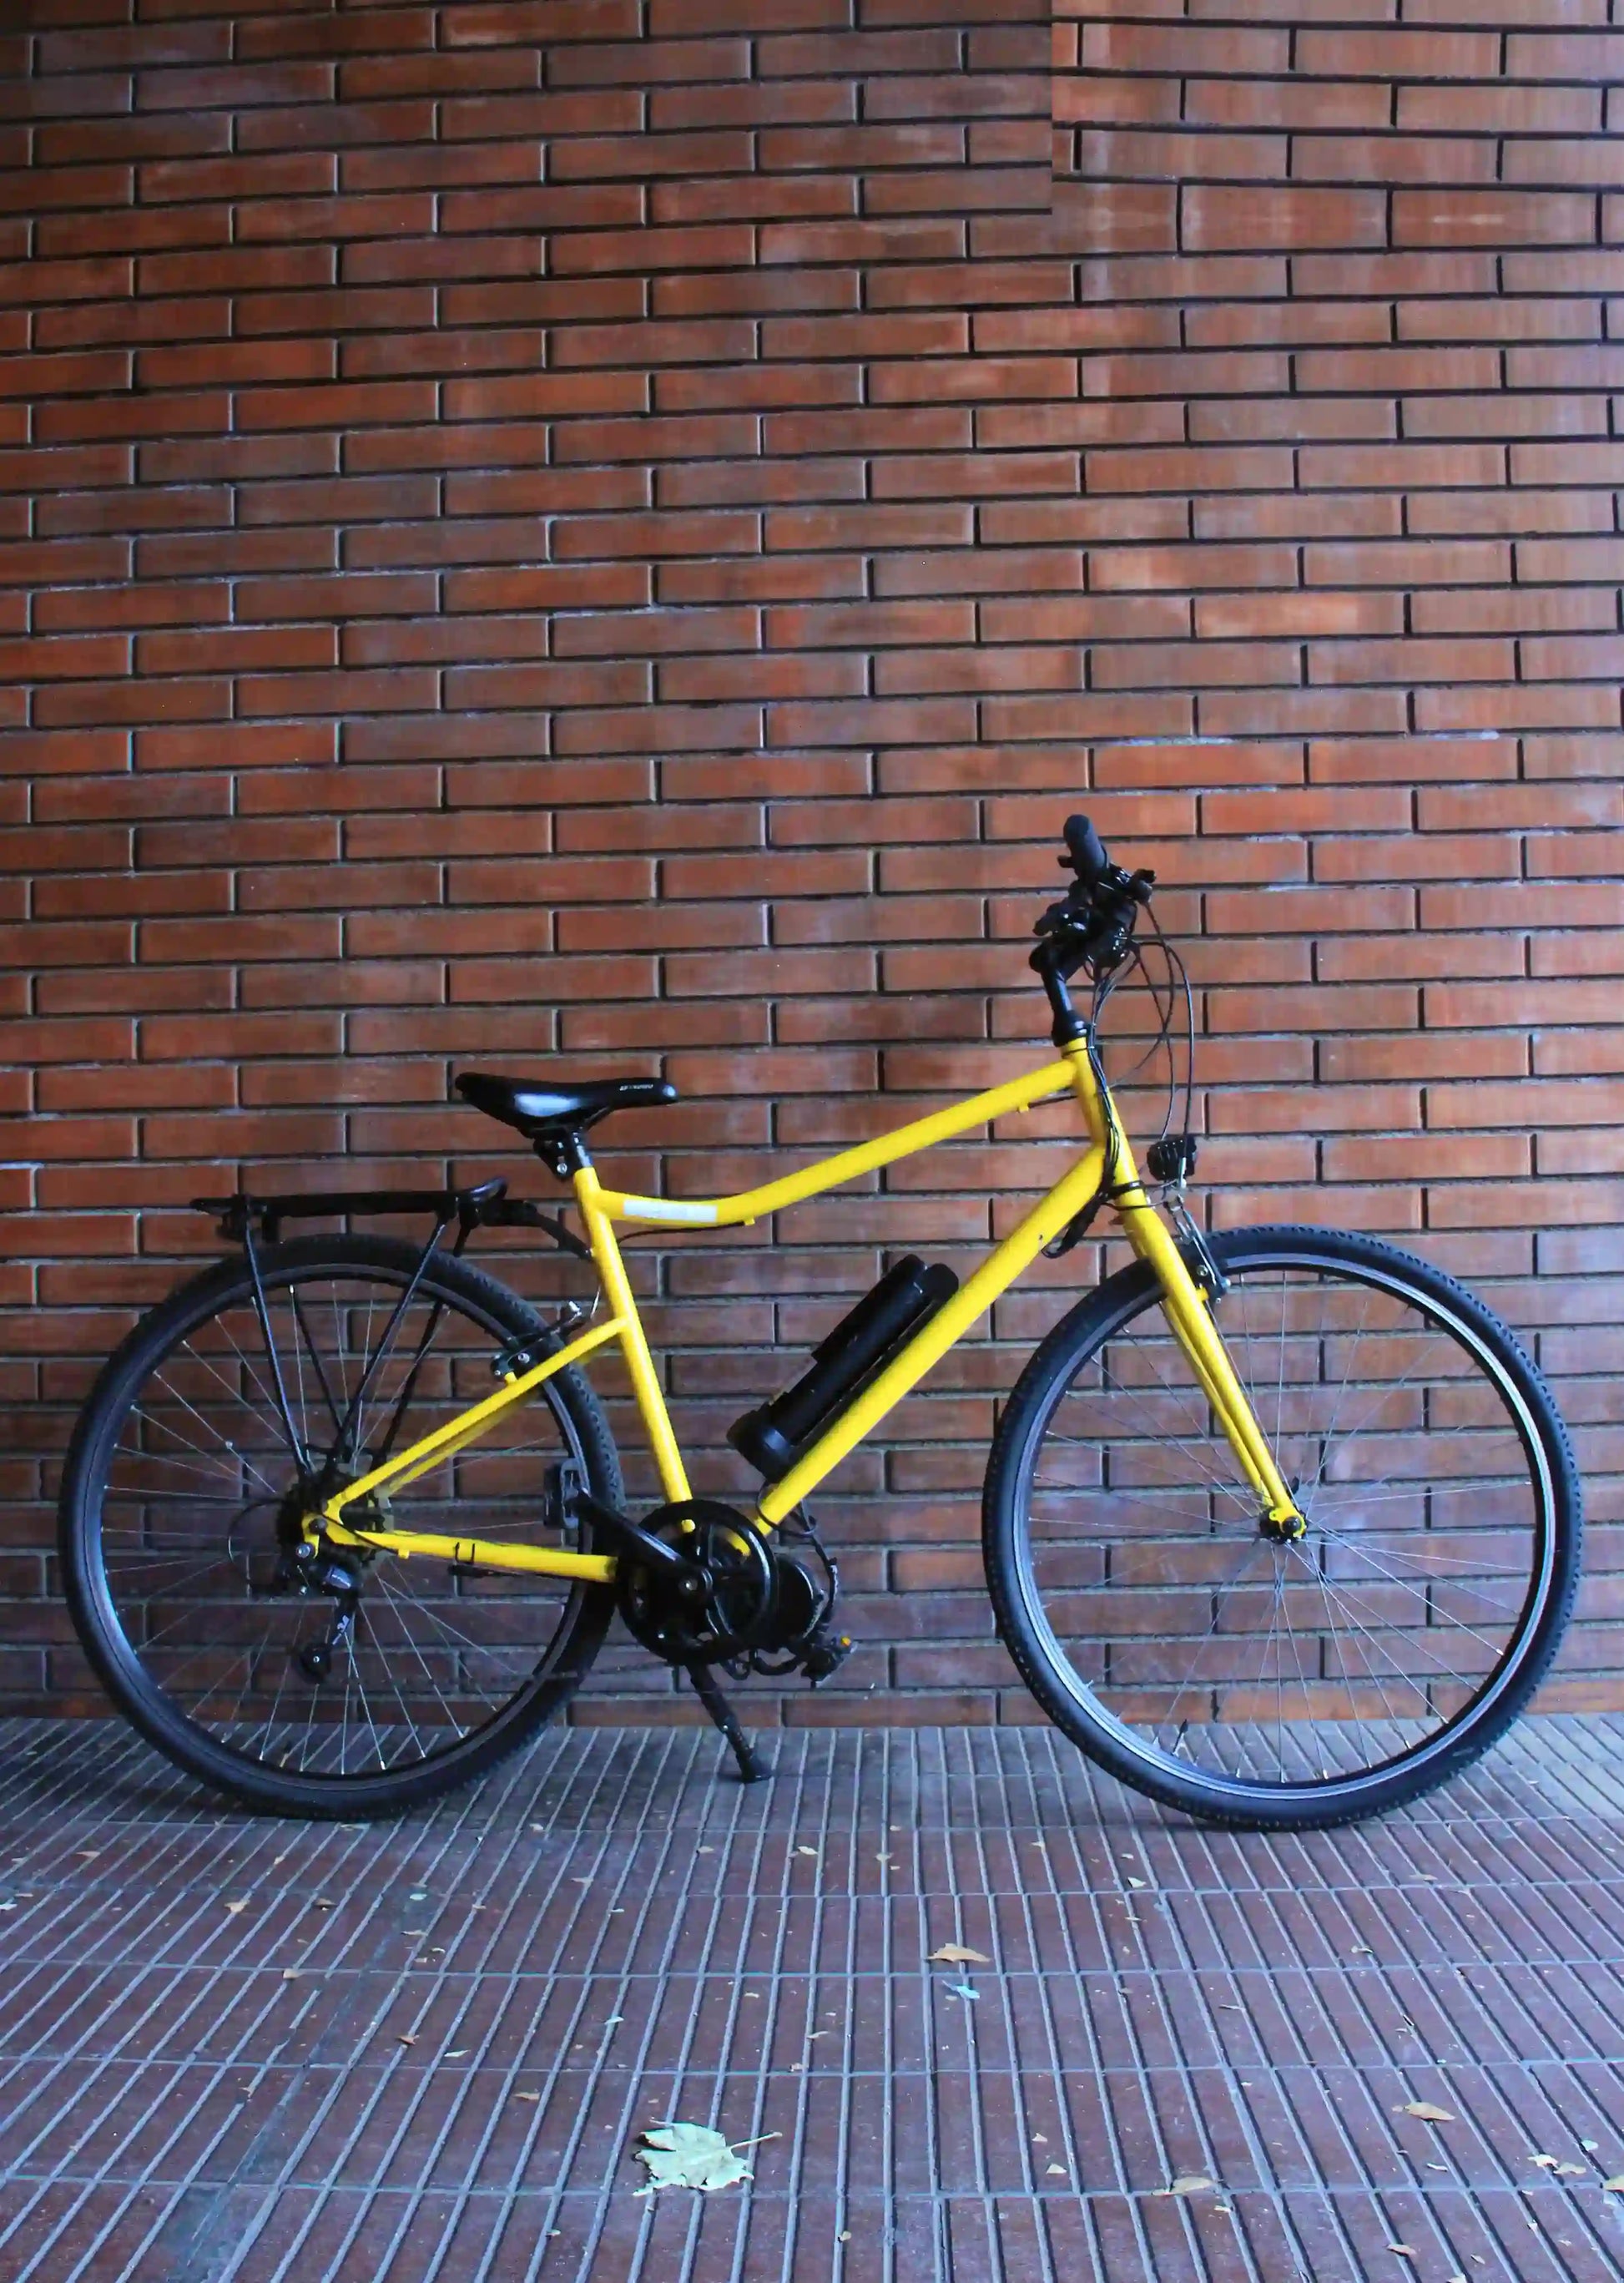  Bicicleta eléctrica modelo Spring slim